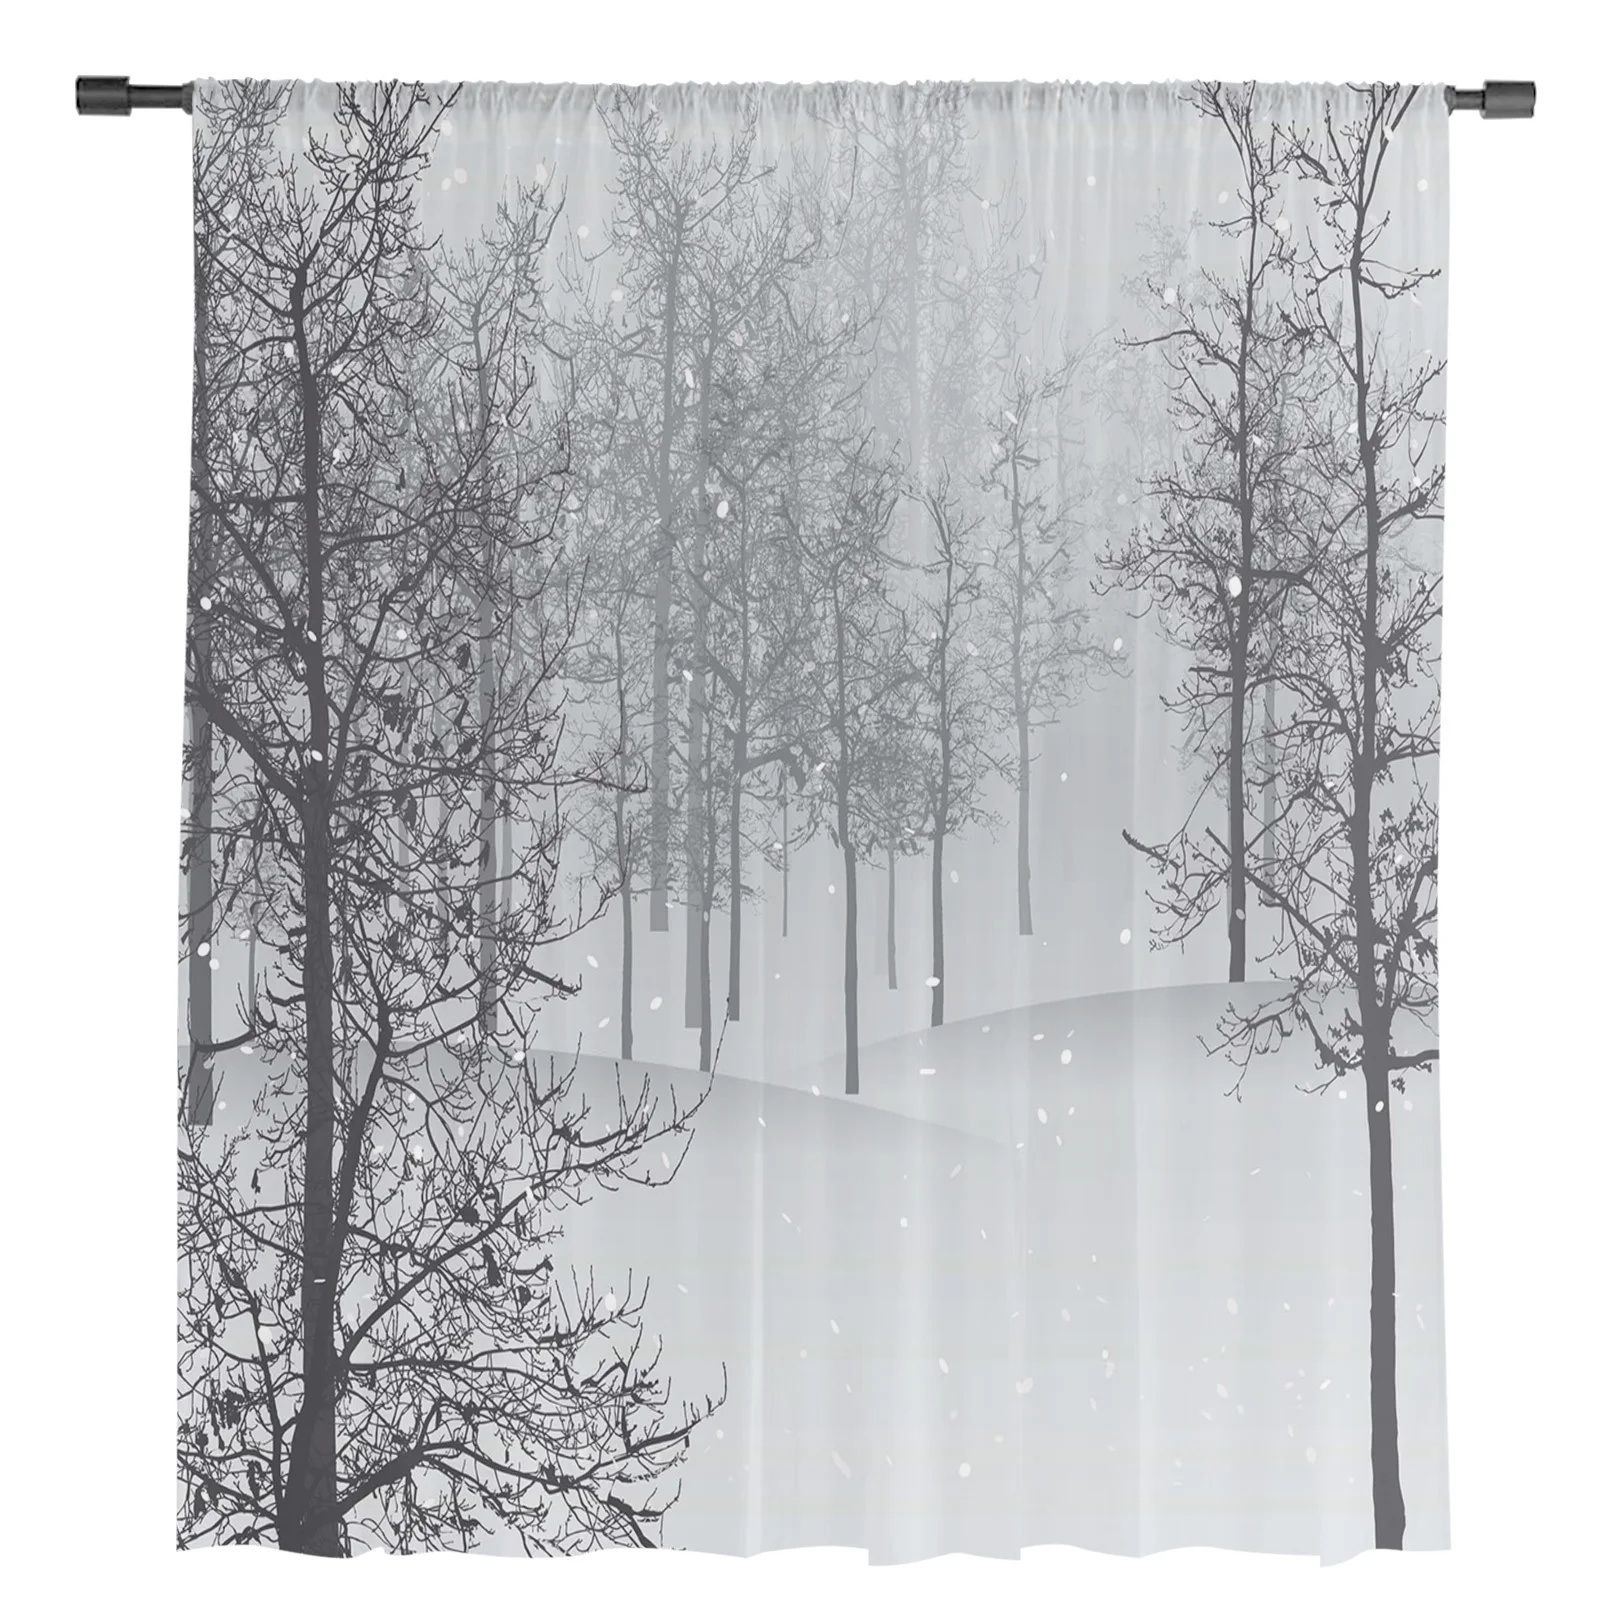 árvores de inverno neve cenário tule cortinas para sala estar quarto moderno voile cortina cozinha chiffon sheer cortinas